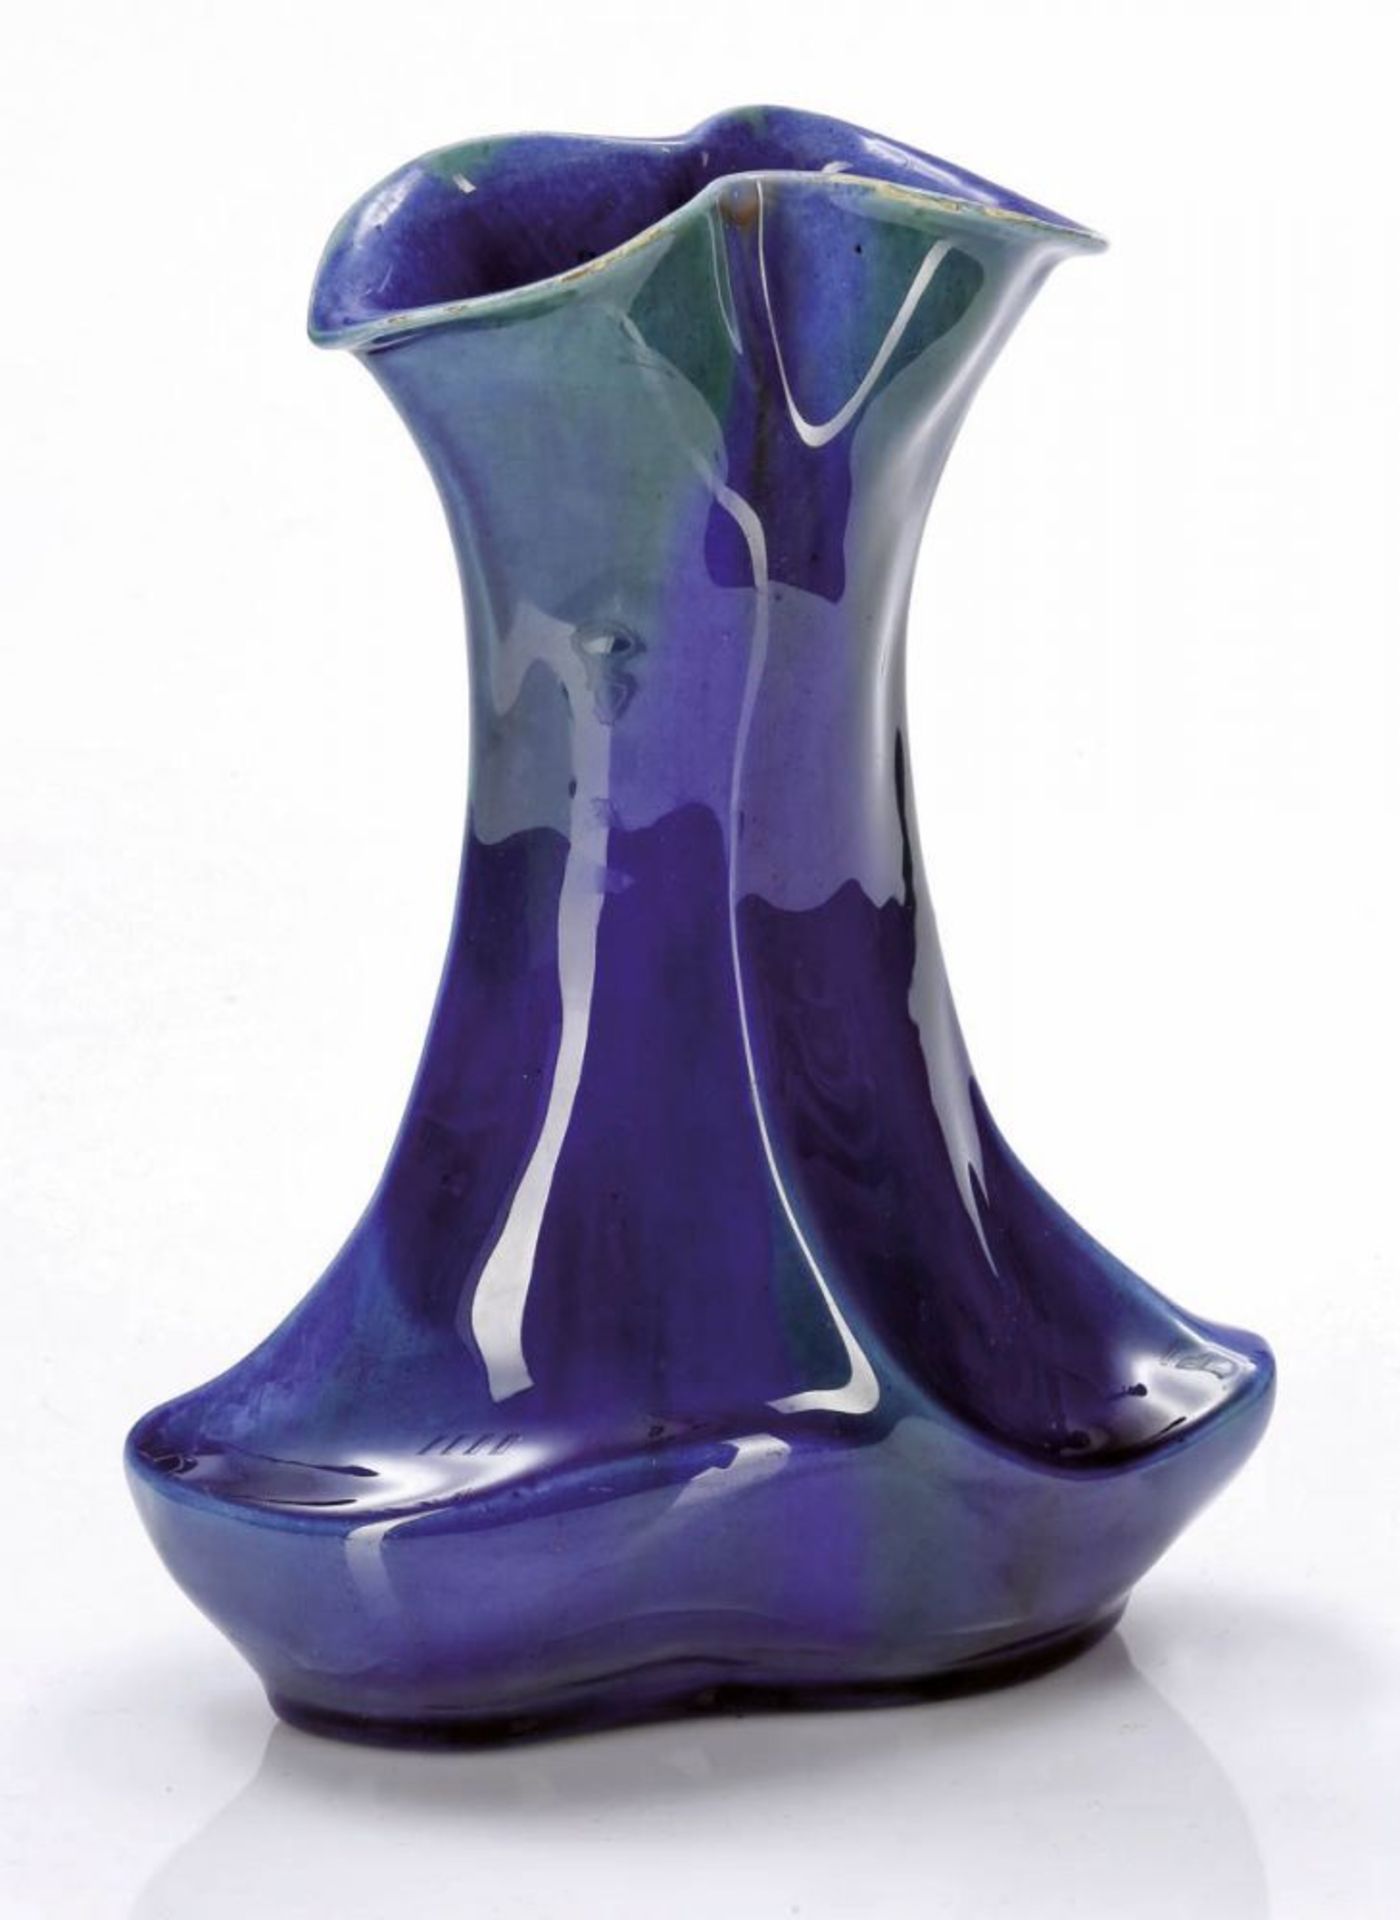 Passige Vase Entwurf  wohl Emmy von Egidy - Ausführung Gebrüder Meinhold, Schweinsburg bei Dresden